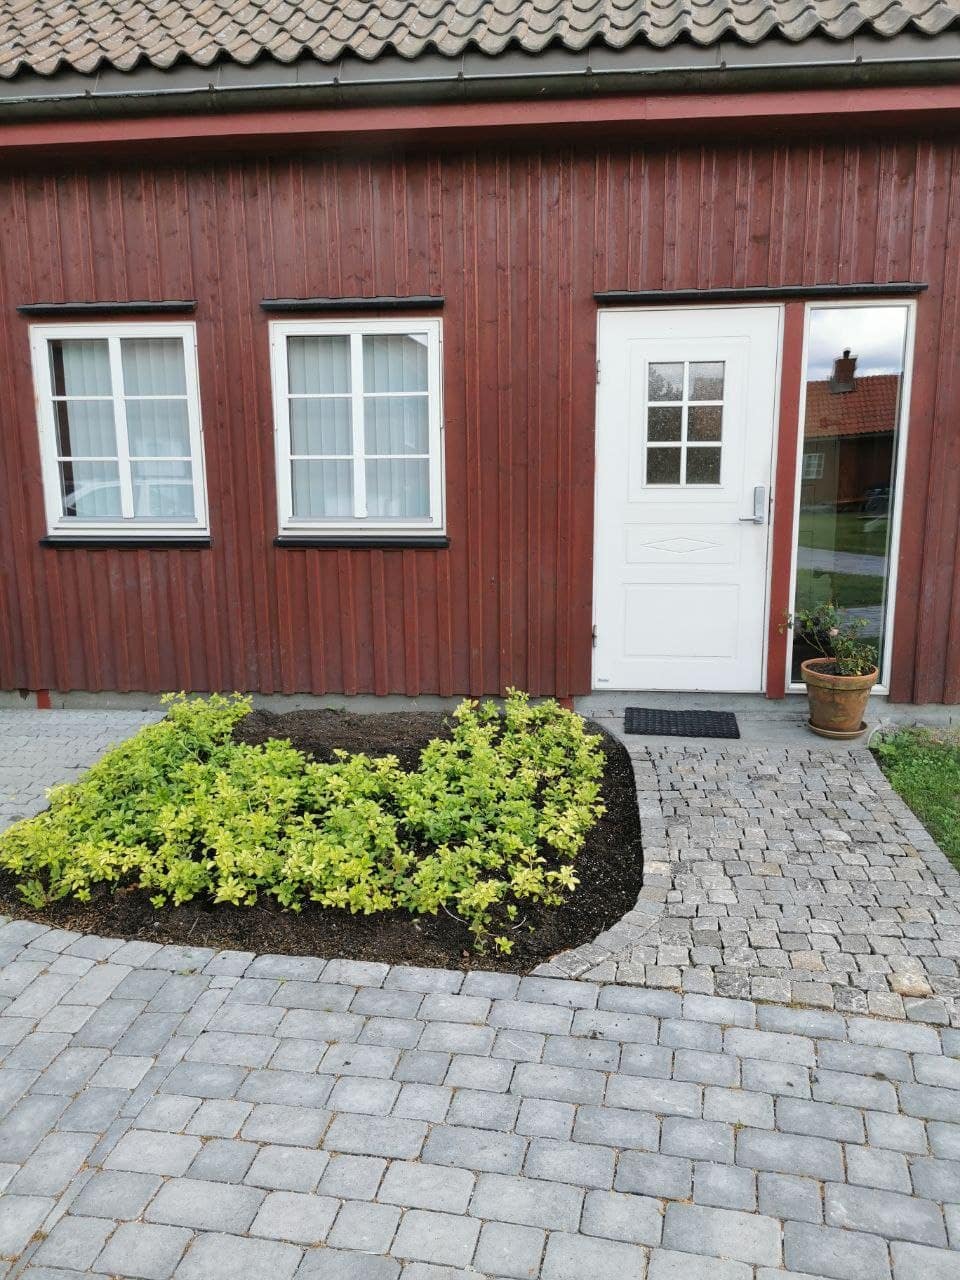 Sandefjord Vacation Rentals & Homes - Vestfold og Telemark, Norway | Airbnb